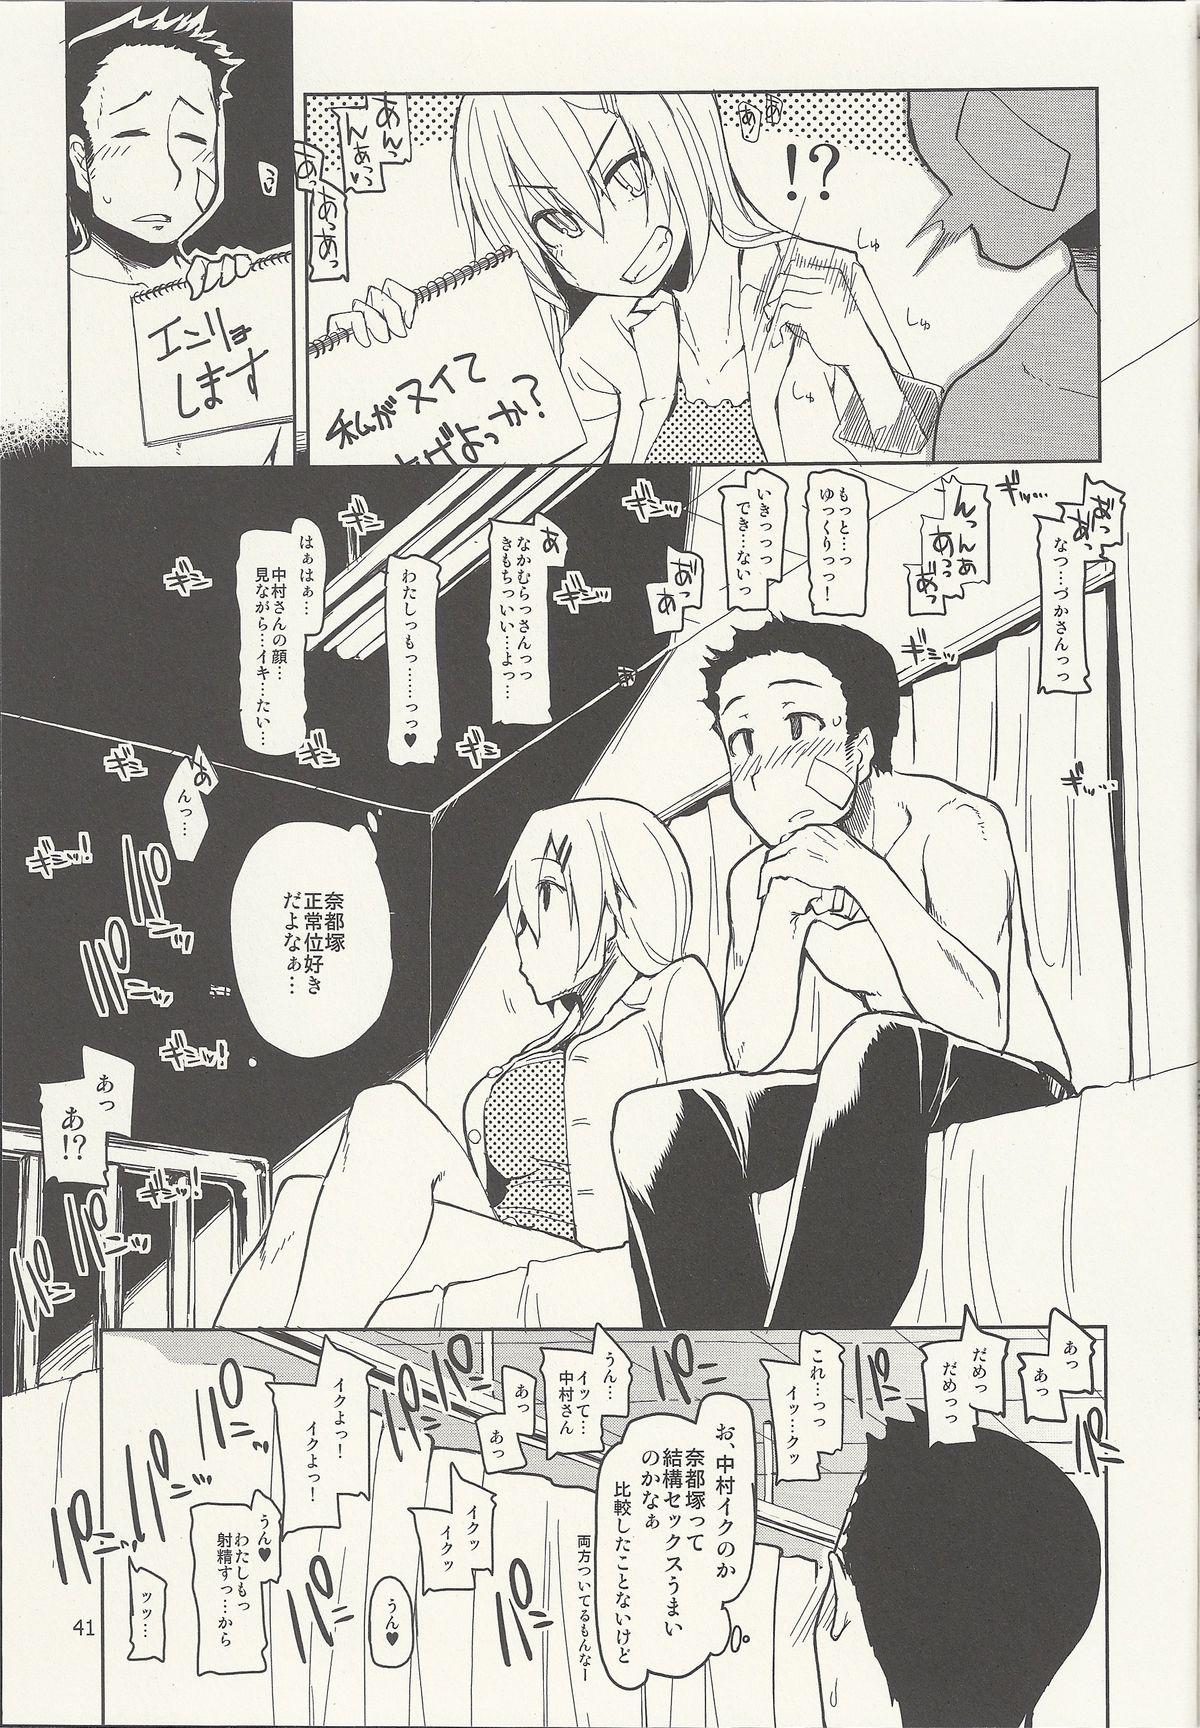 Natsuzuka-san no Himitsu. Vol. 6 Kanketsu Hen 42